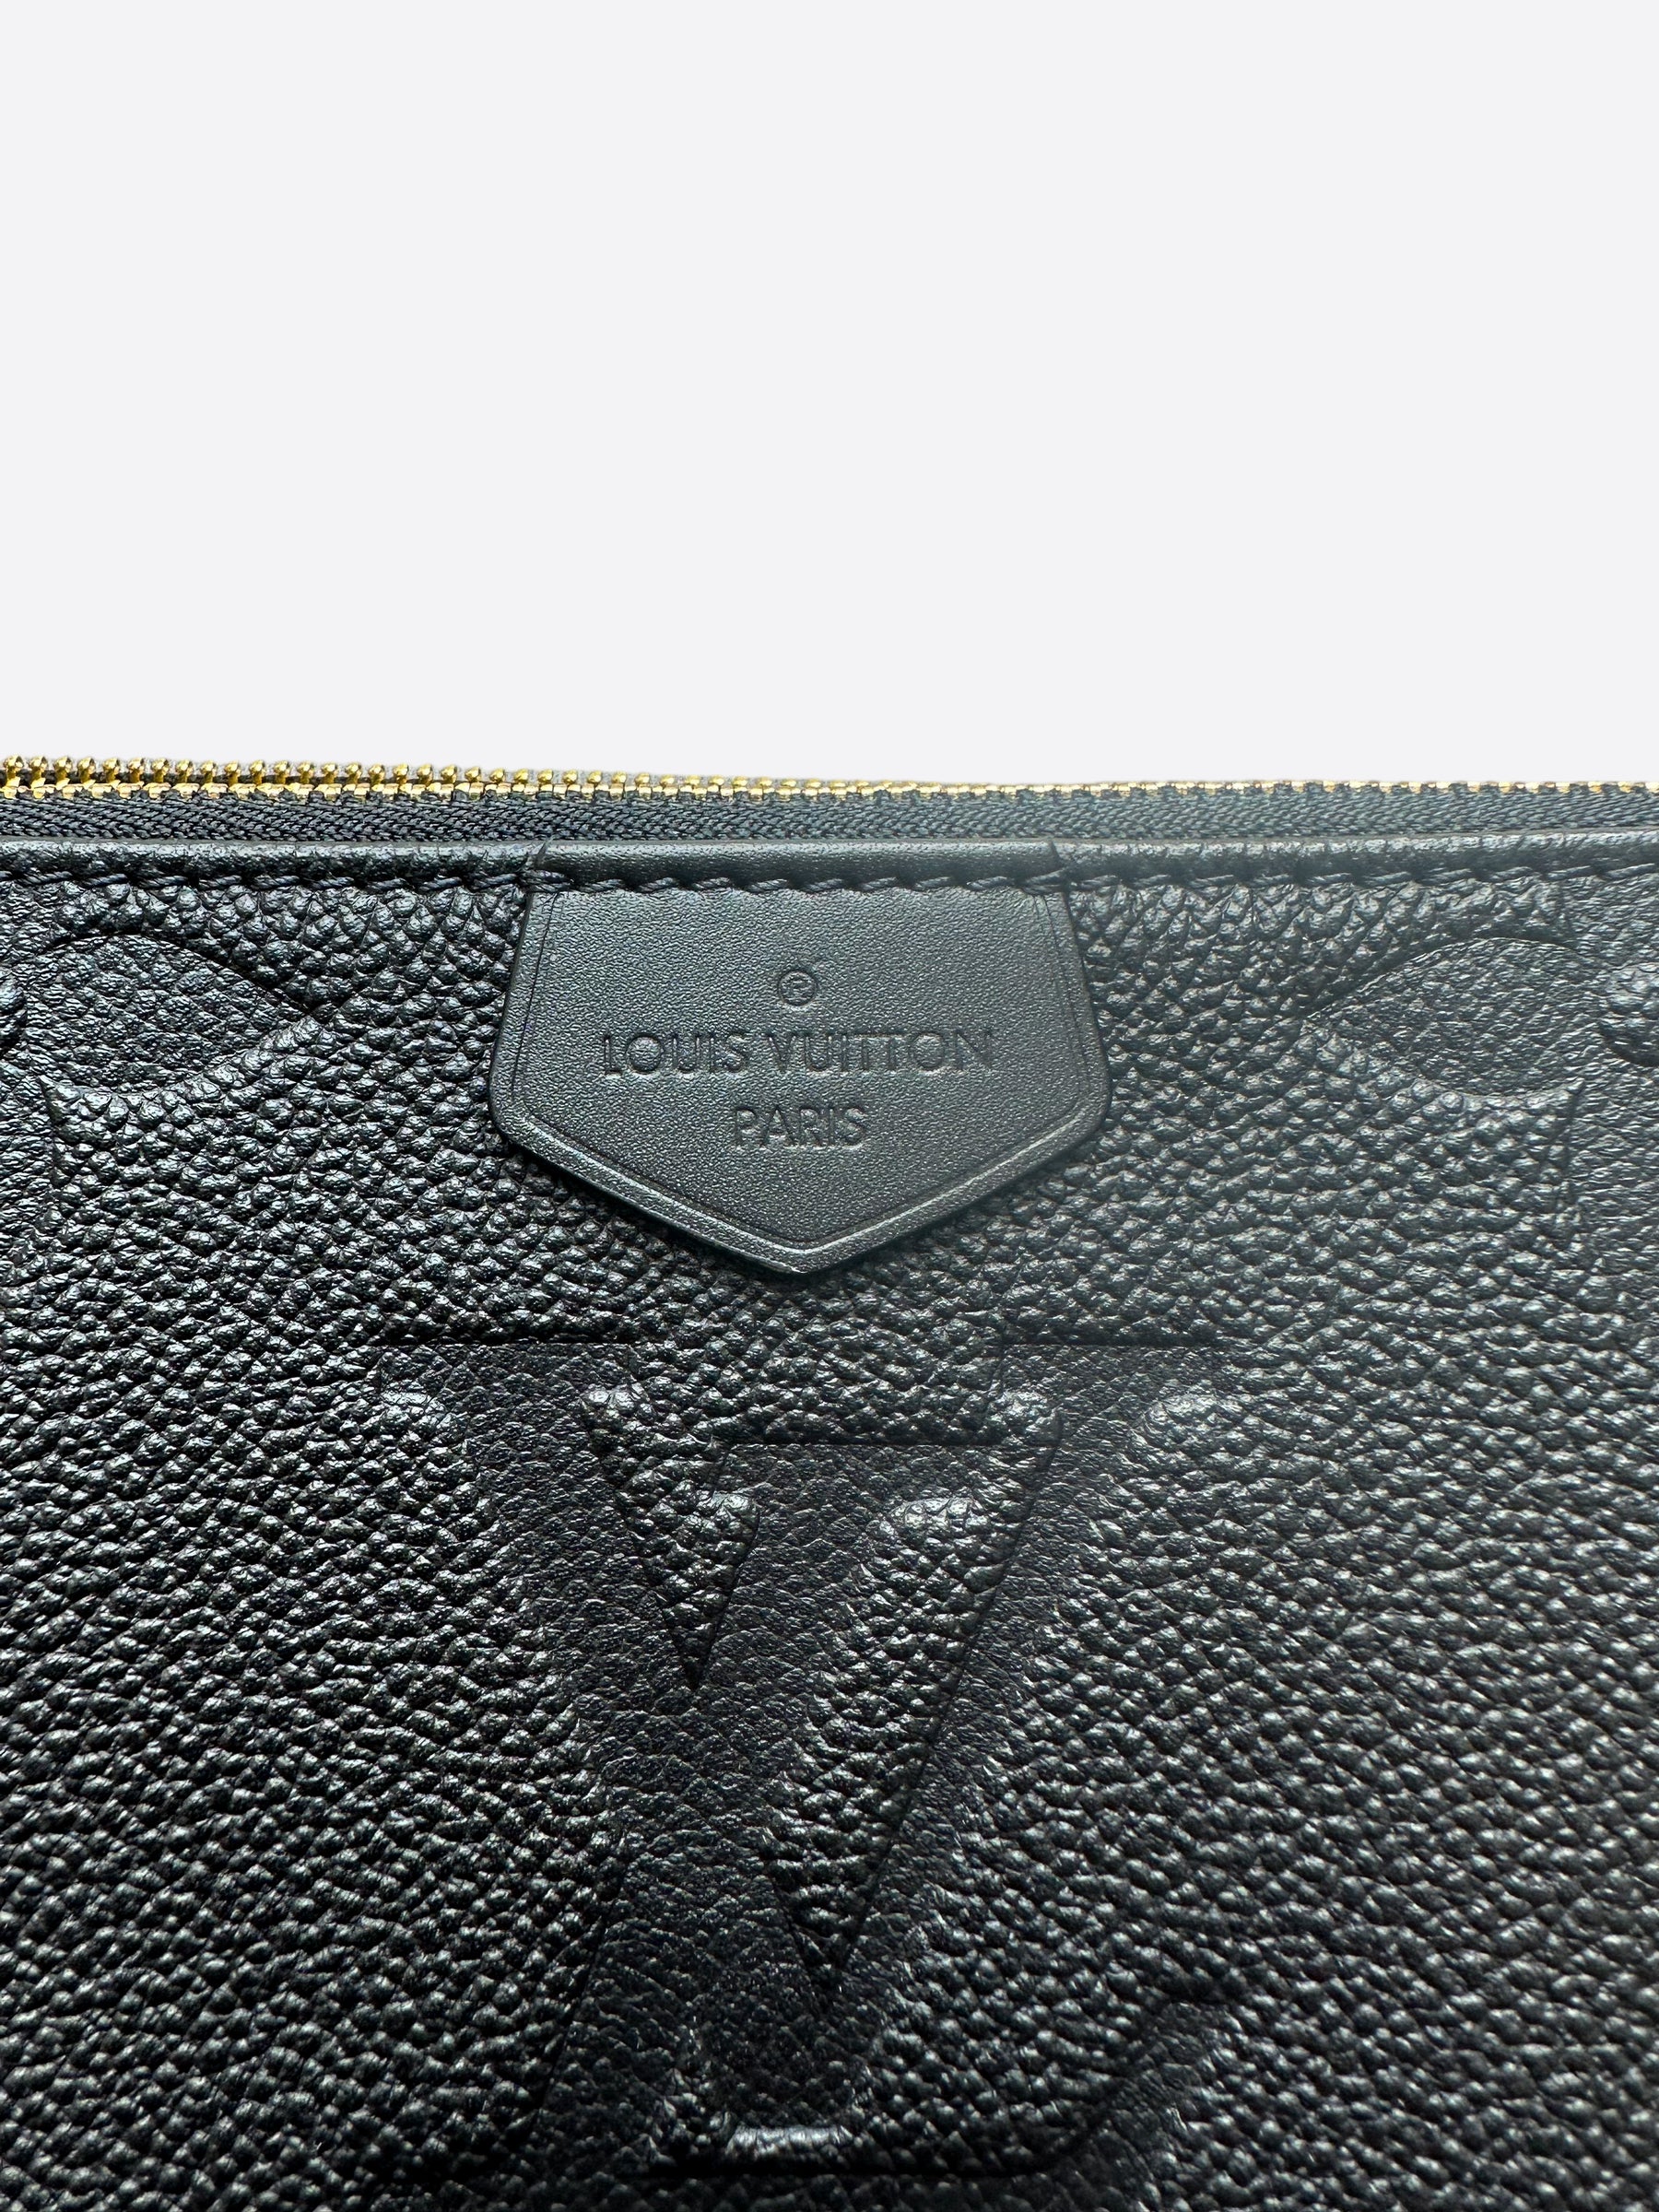 Louis Vuitton Black Monogram Empreinte Félicie Pochette, myGemma